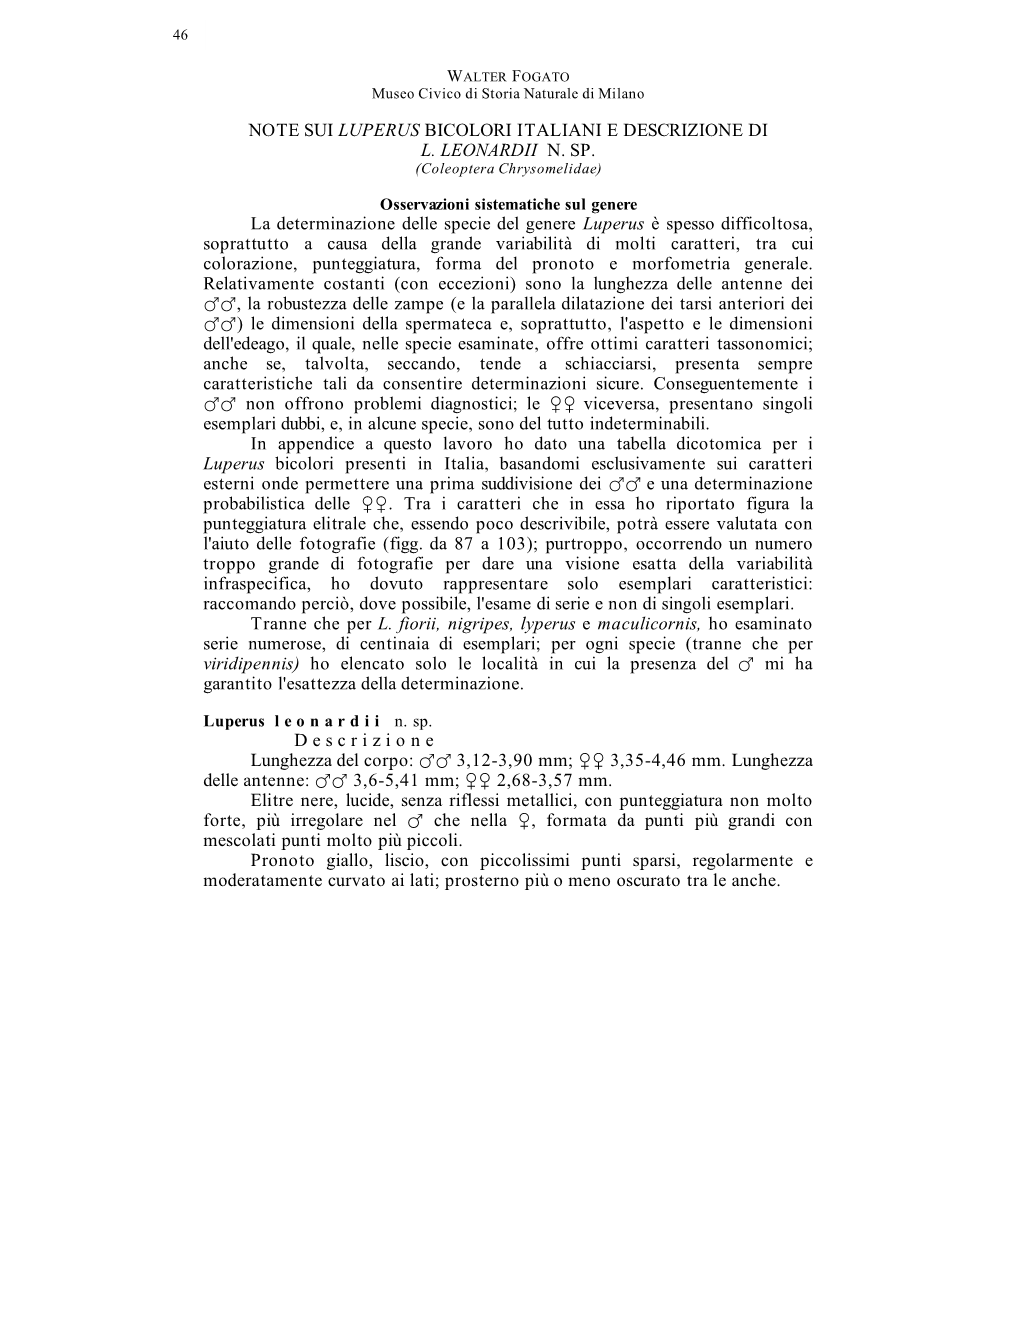 Note Sui Luperus Bicolori Italiani E Descrizione Di L